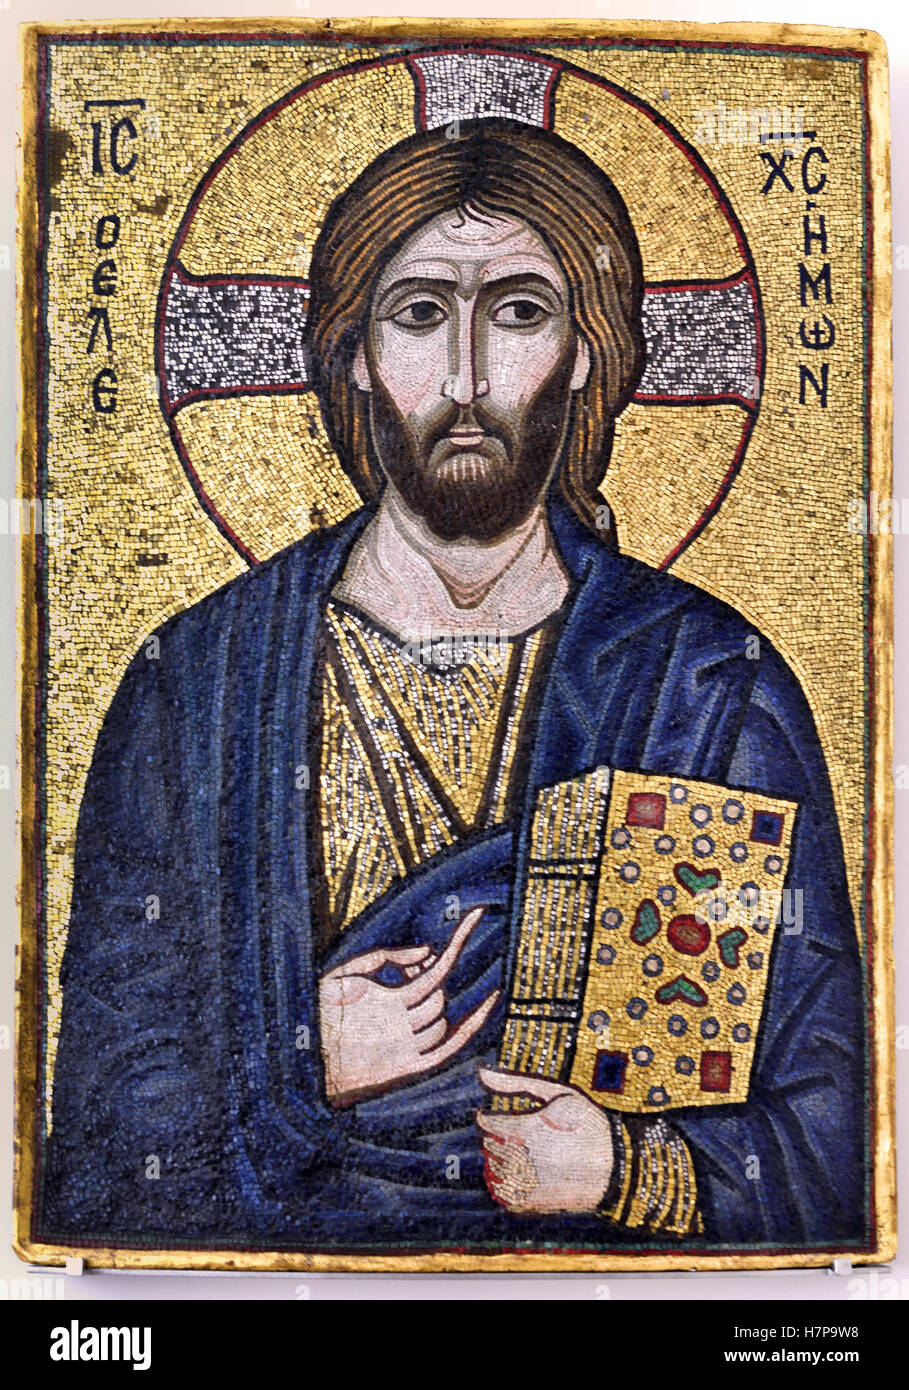 Christus die barmherzigen Mosaik-Ikone 12. Jahrhundert Konstantinopel Istanbul Türkei türkisches oströmischen (Mosaik aus Glas und Naturstein in Wachs Bett auf Holzplatte) Stockfoto